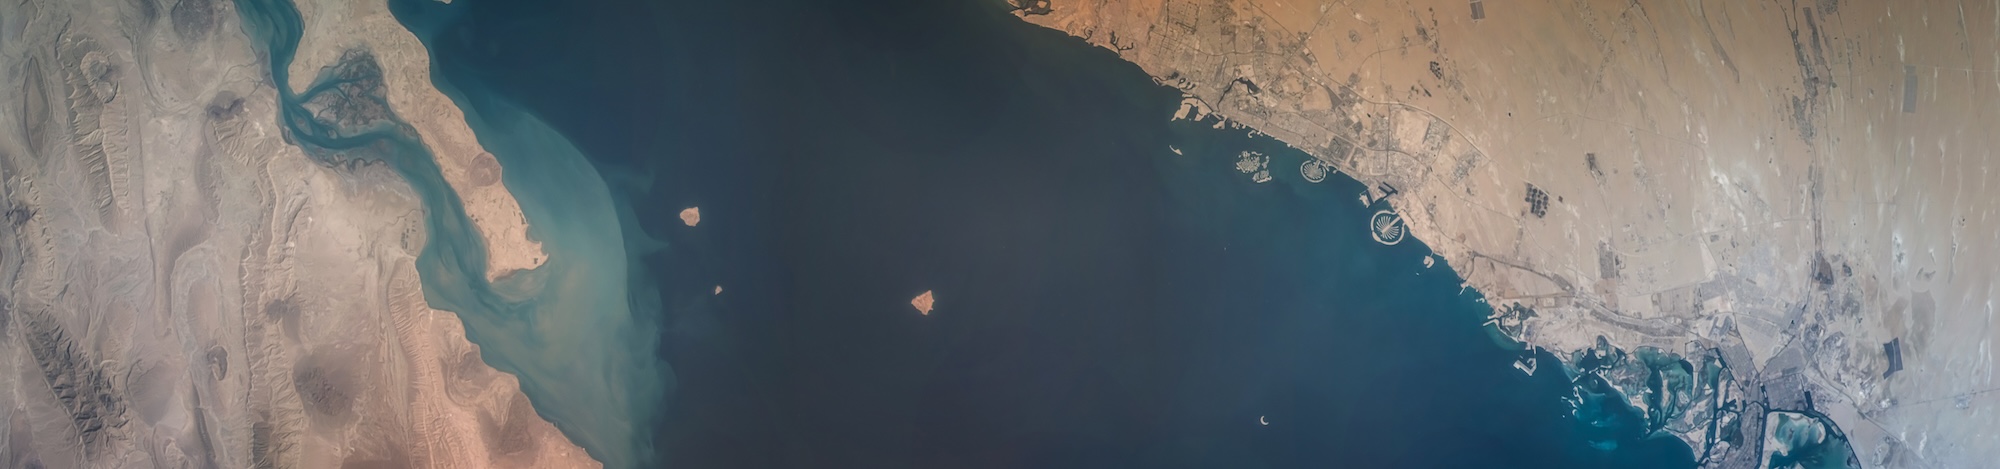 endurosat-Panorama-from-orbit-Dubai